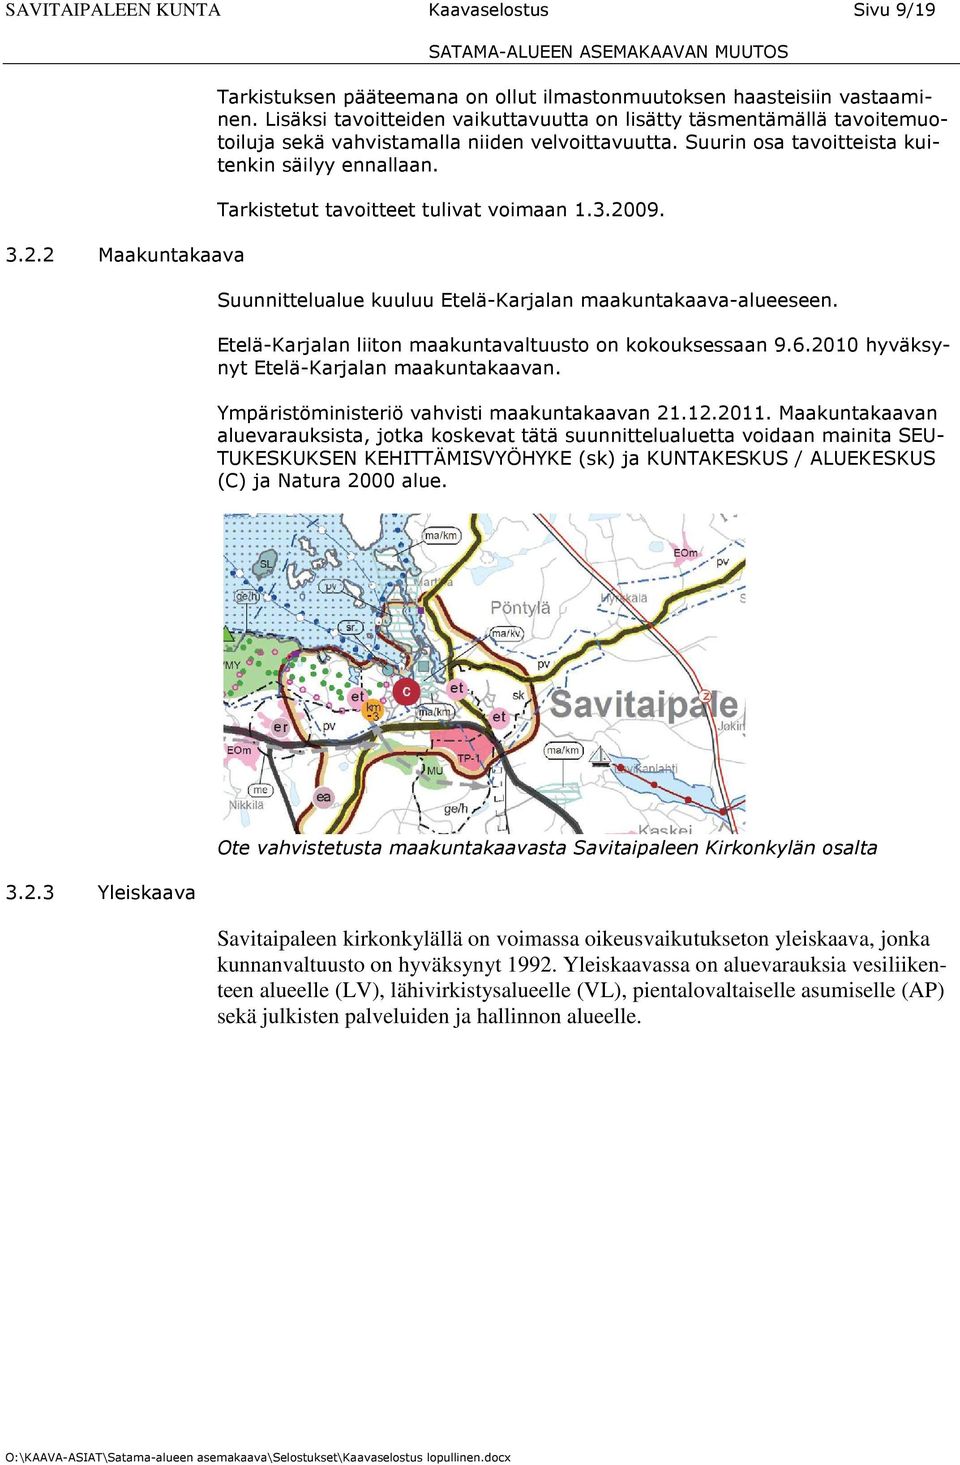 Tarkistetut tavoitteet tulivat voimaan 1.3.2009. Suunnittelualue kuuluu Etelä-Karjalan maakuntakaava-alueeseen. Etelä-Karjalan liiton maakuntavaltuusto on kokouksessaan 9.6.